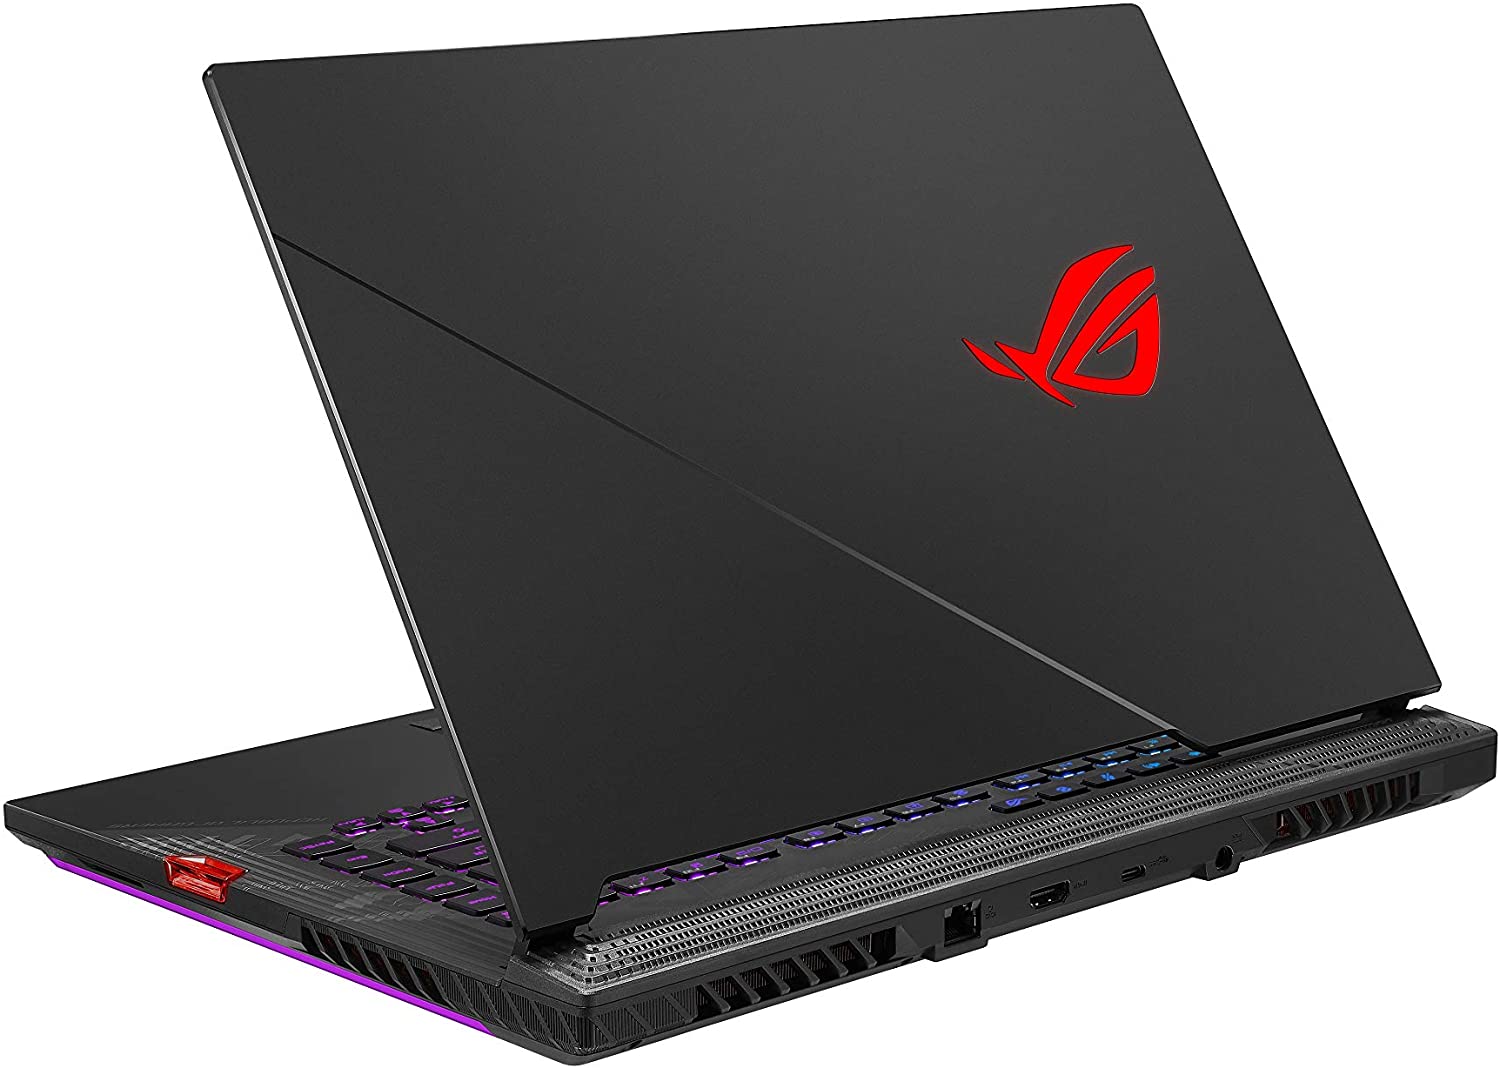 ASUS ROG Strix Scar 15 (2020) Gaming Laptop, 15.6” 240Hz IPS Type FHD, NVIDIA GeForce RTX 2070